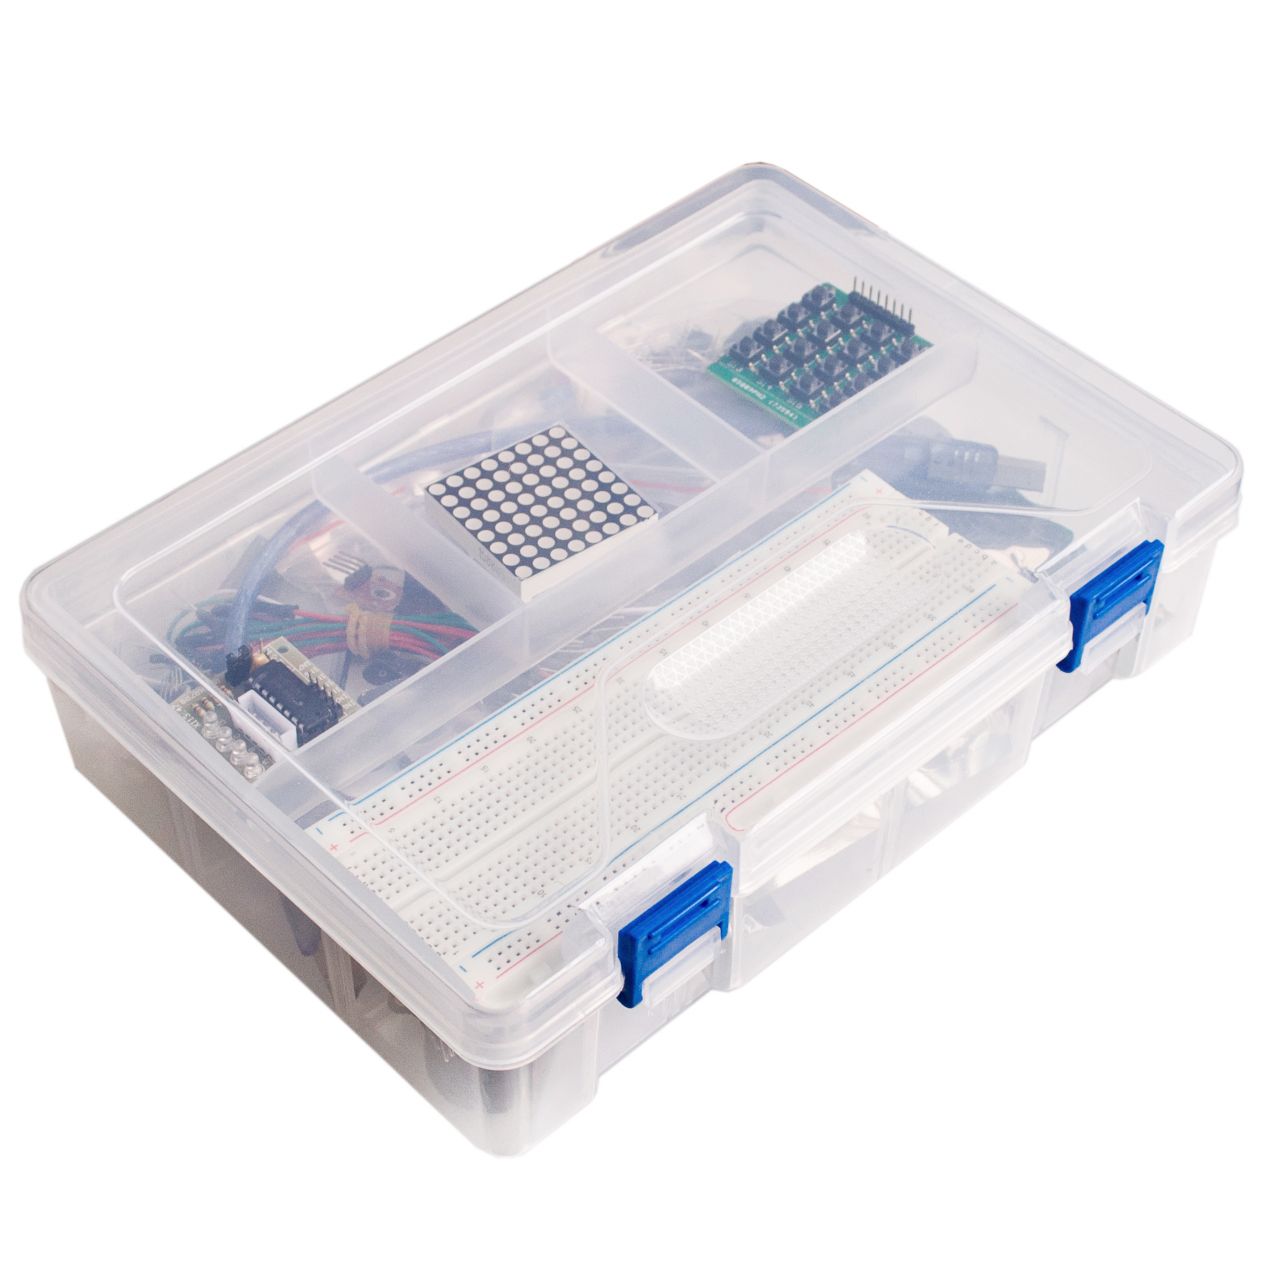 Starter Kit für Arduino UNO R3 RFID im Kunststoffkasten unter RoboMall